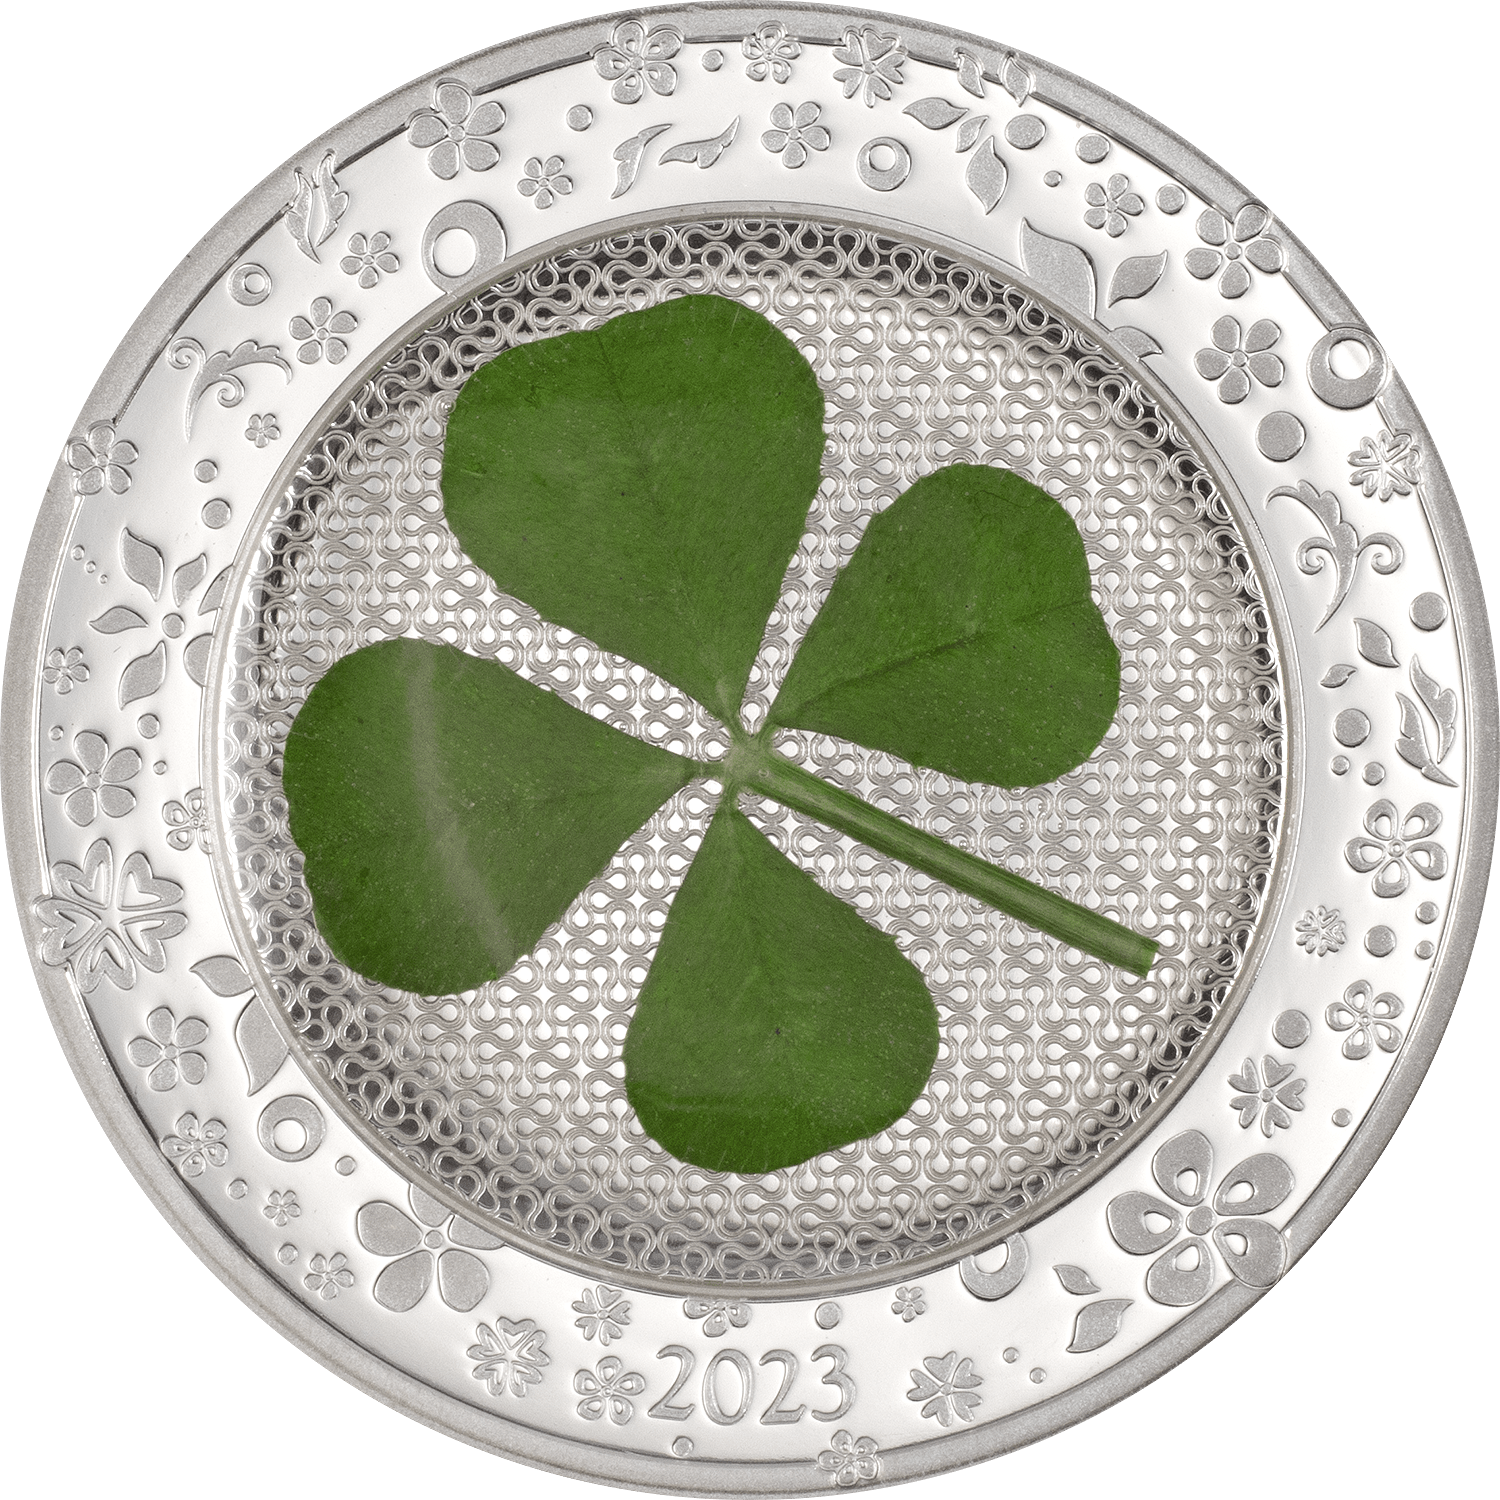 OUNCE OF LUCK Four Leaf Clover 1 Oz Silver Coin $5 Palau 2023 - PARTHAVA COIN